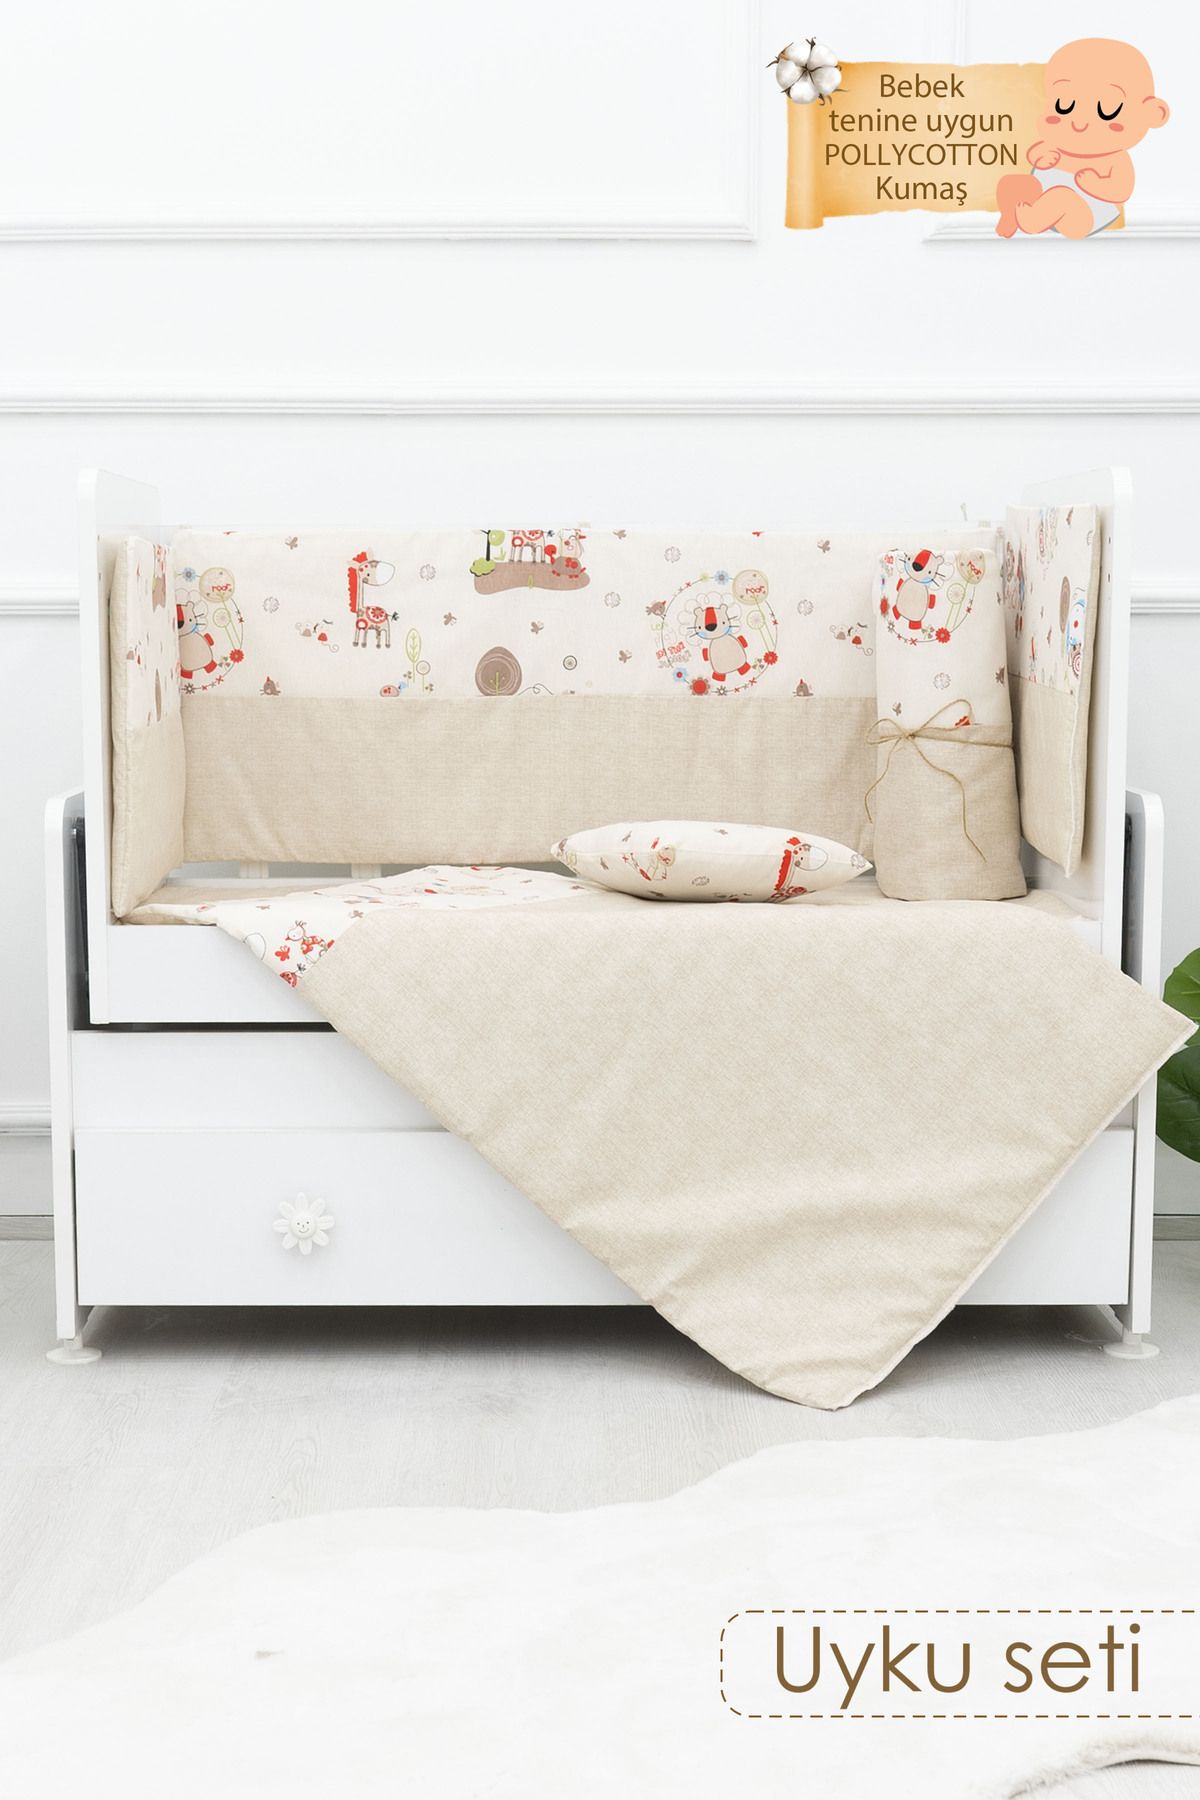 mordesign Bebek Uyku Seti, 50x100 cm Beşik Uyku Seti, 8 Parça Bebek Beşik Seti, Animal Serisi